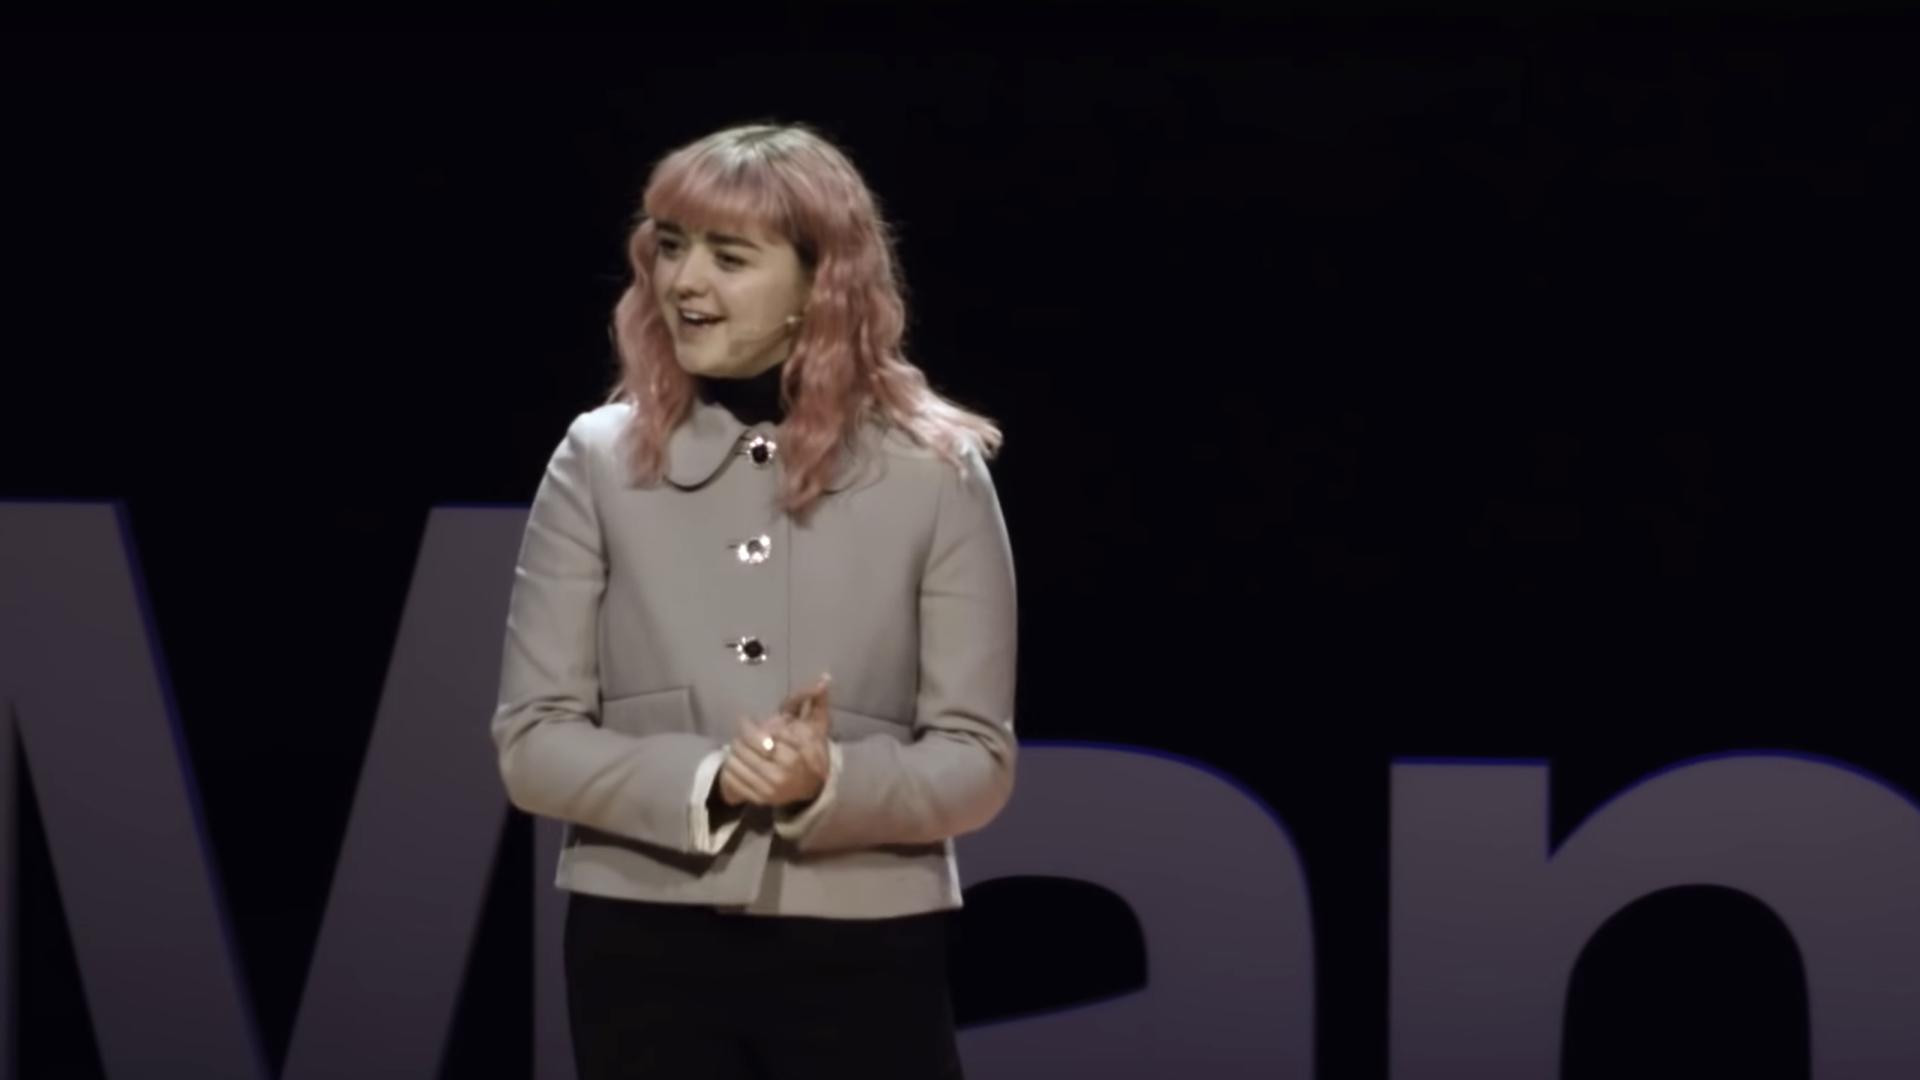 Maisie Williams: 有名になる努力でなく、才能を発揮する努力をしよう | メイジ―・ウィリアムズ | TEDxManchester | TED Talk